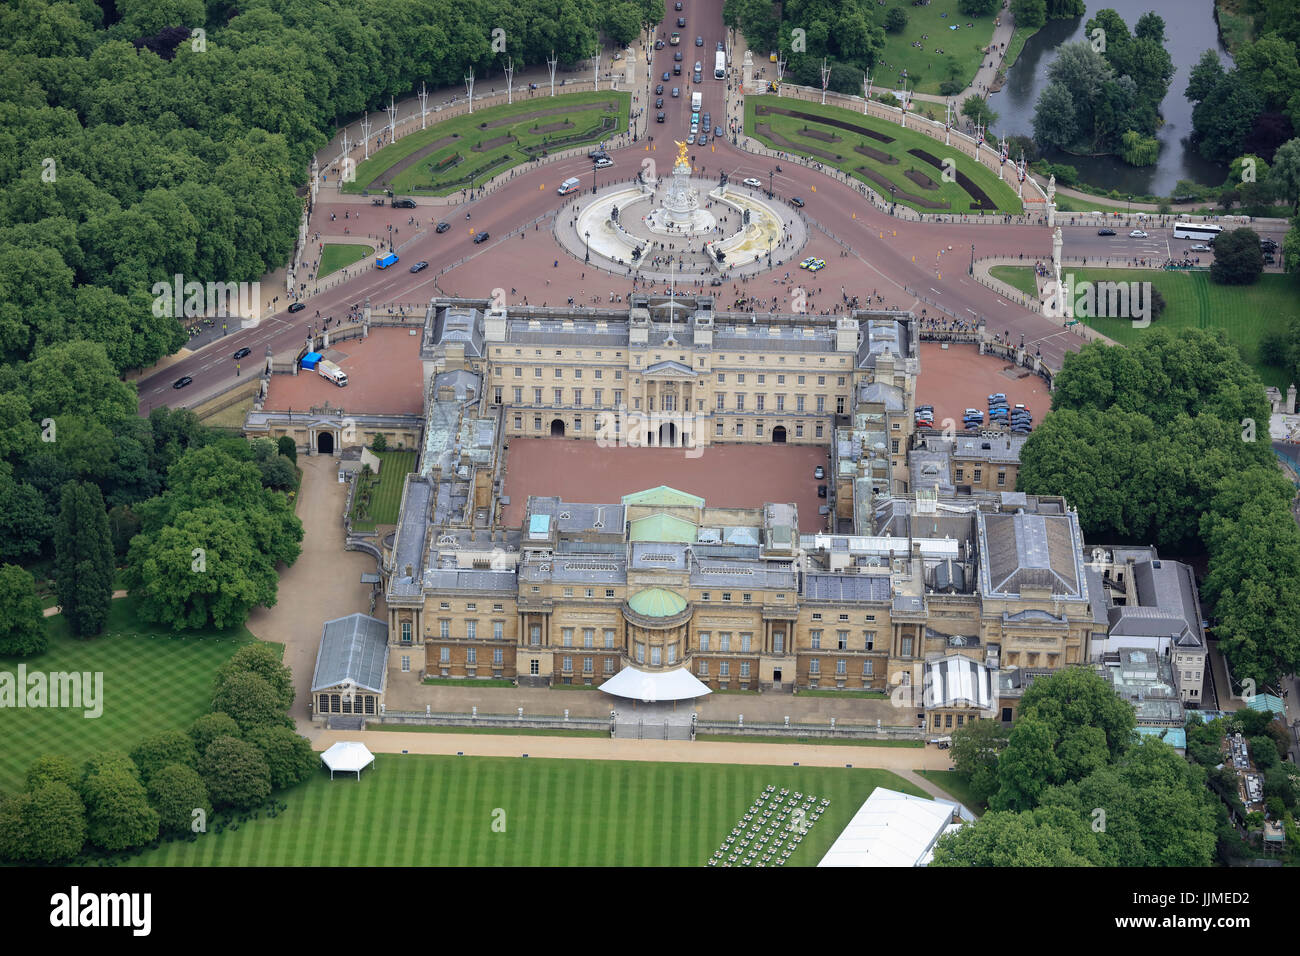 Una vista aérea de la parte trasera del Palacio de Buckingham con el Albert Memorial y la parte superior de la Mall visible Foto de stock